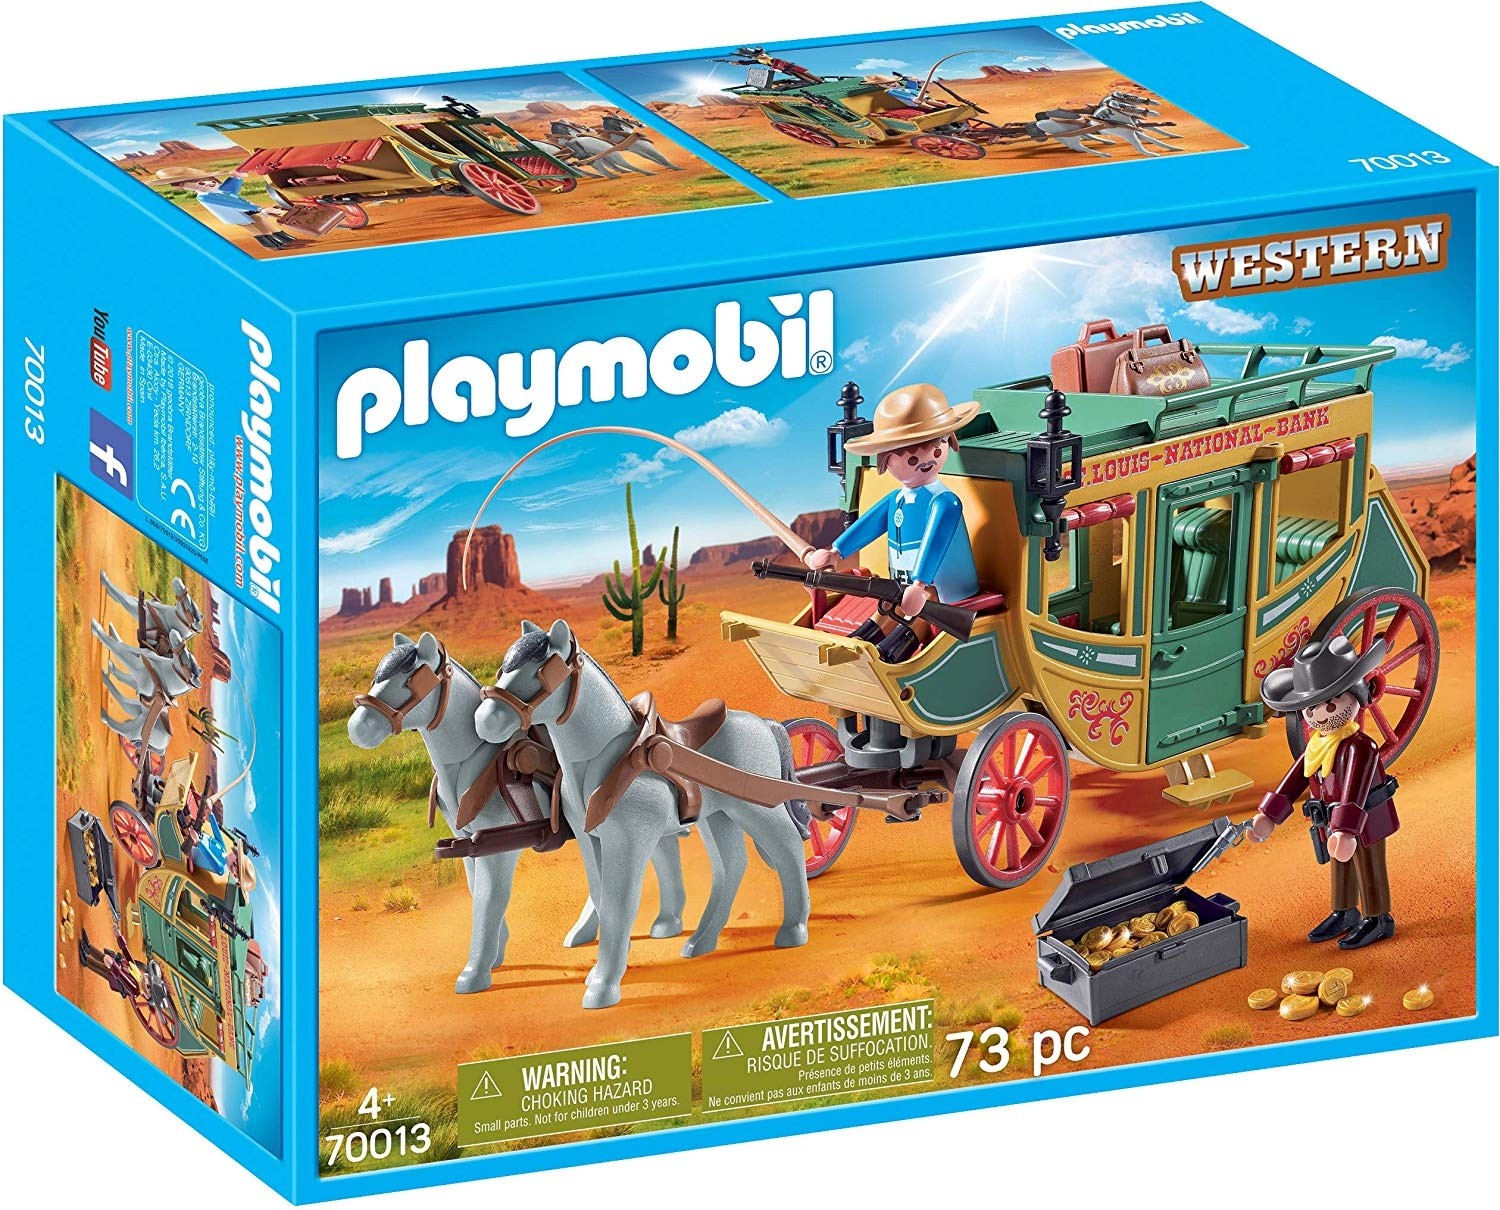 Carrozza Western by Playmobil 70013